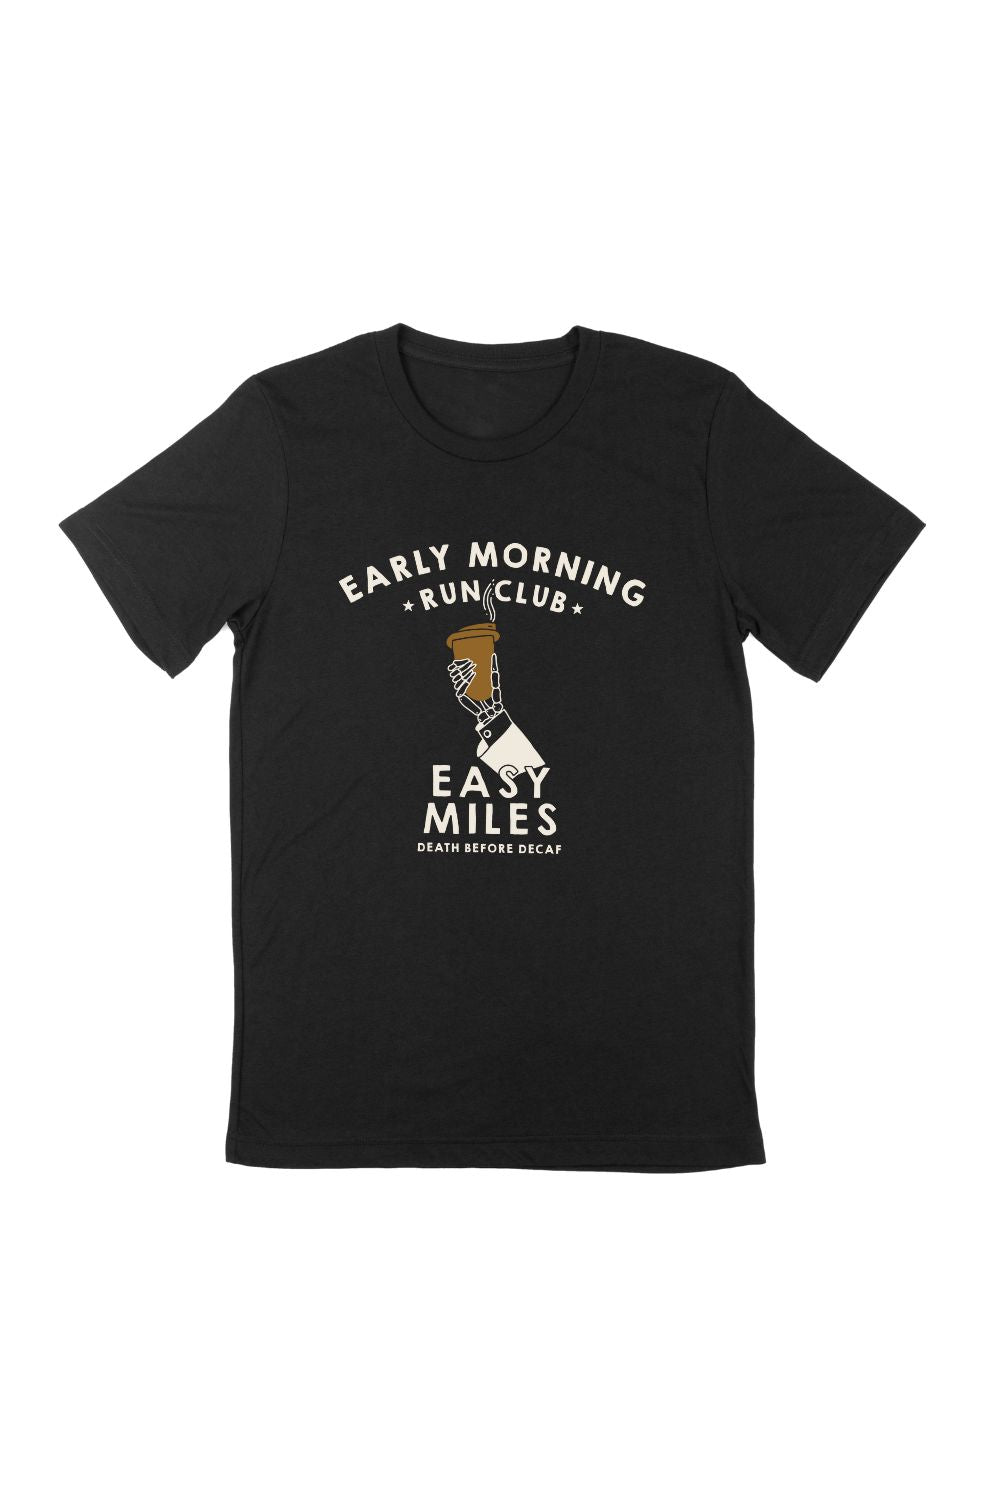 Early Morning Run Club T-Shirt